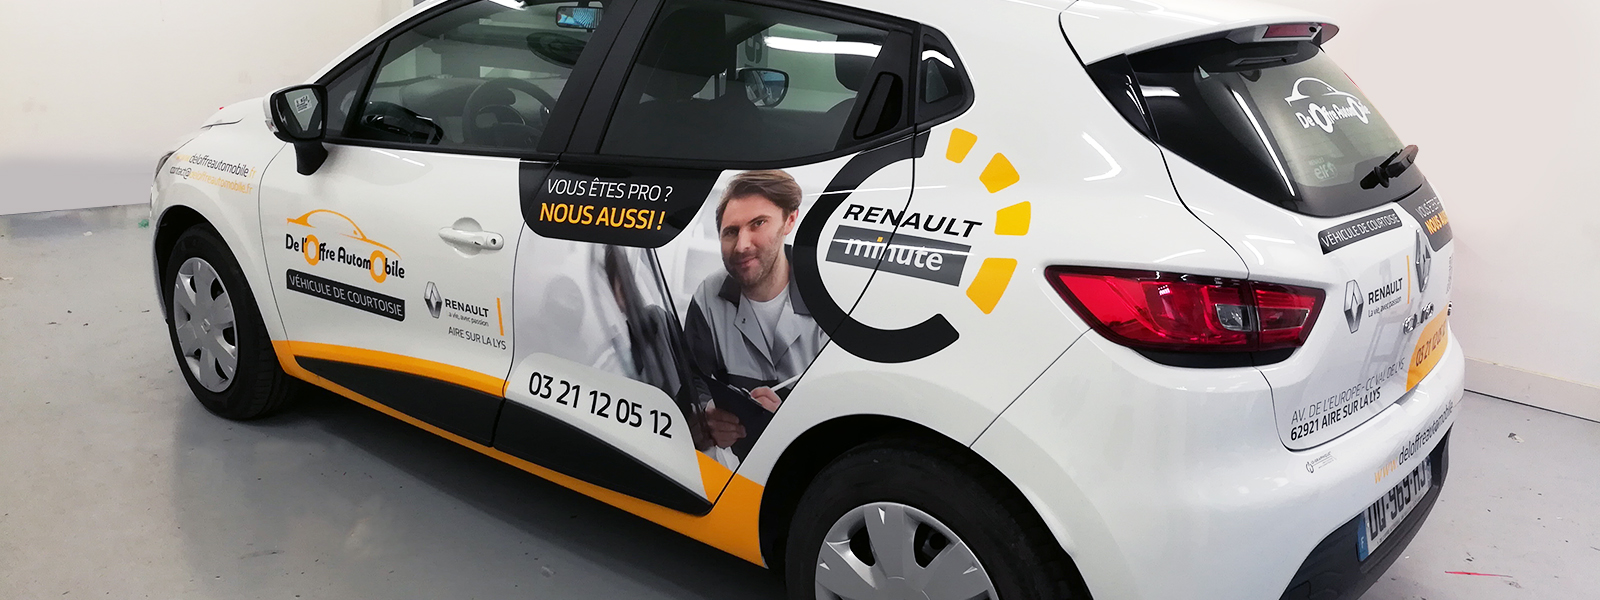 Marquage publicitaire gamme déco pour garage Renault